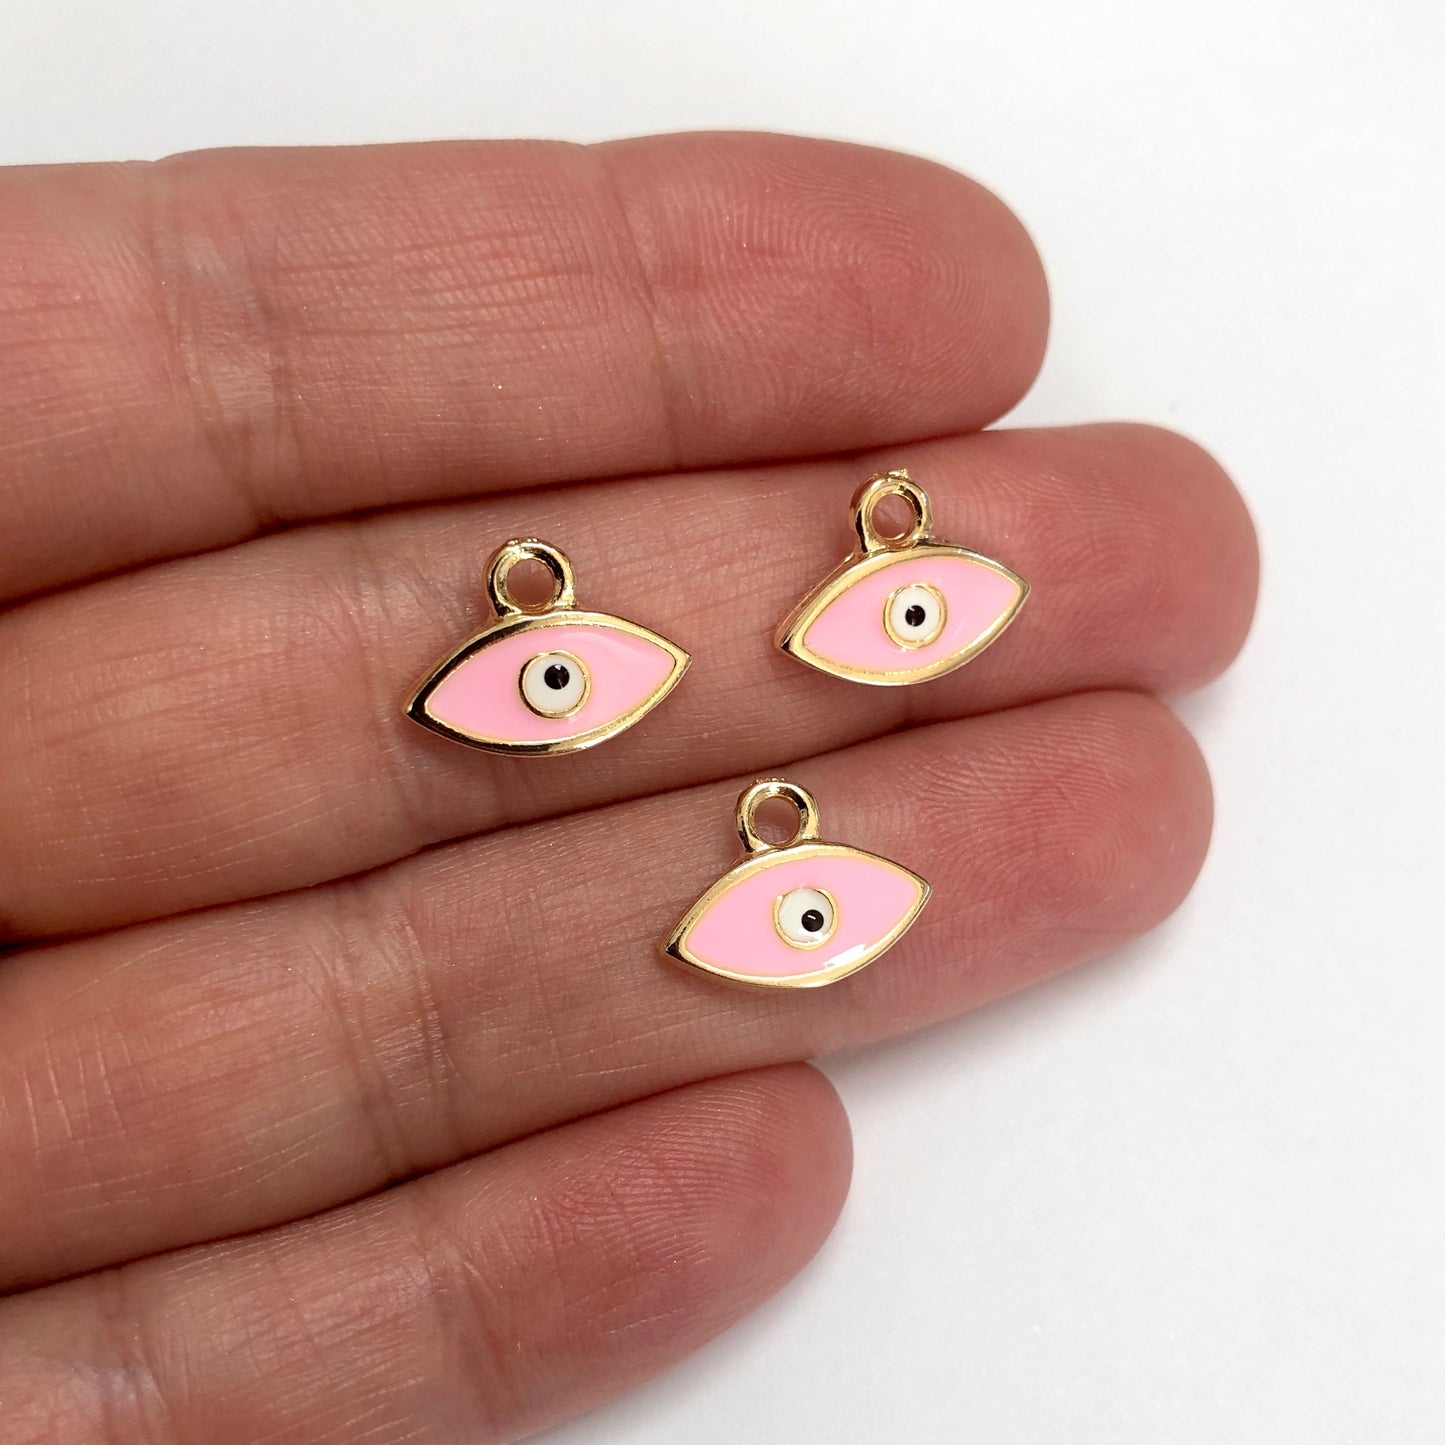 Vergoldeter Emaille-Anhänger mit kleinen Augen - Pink